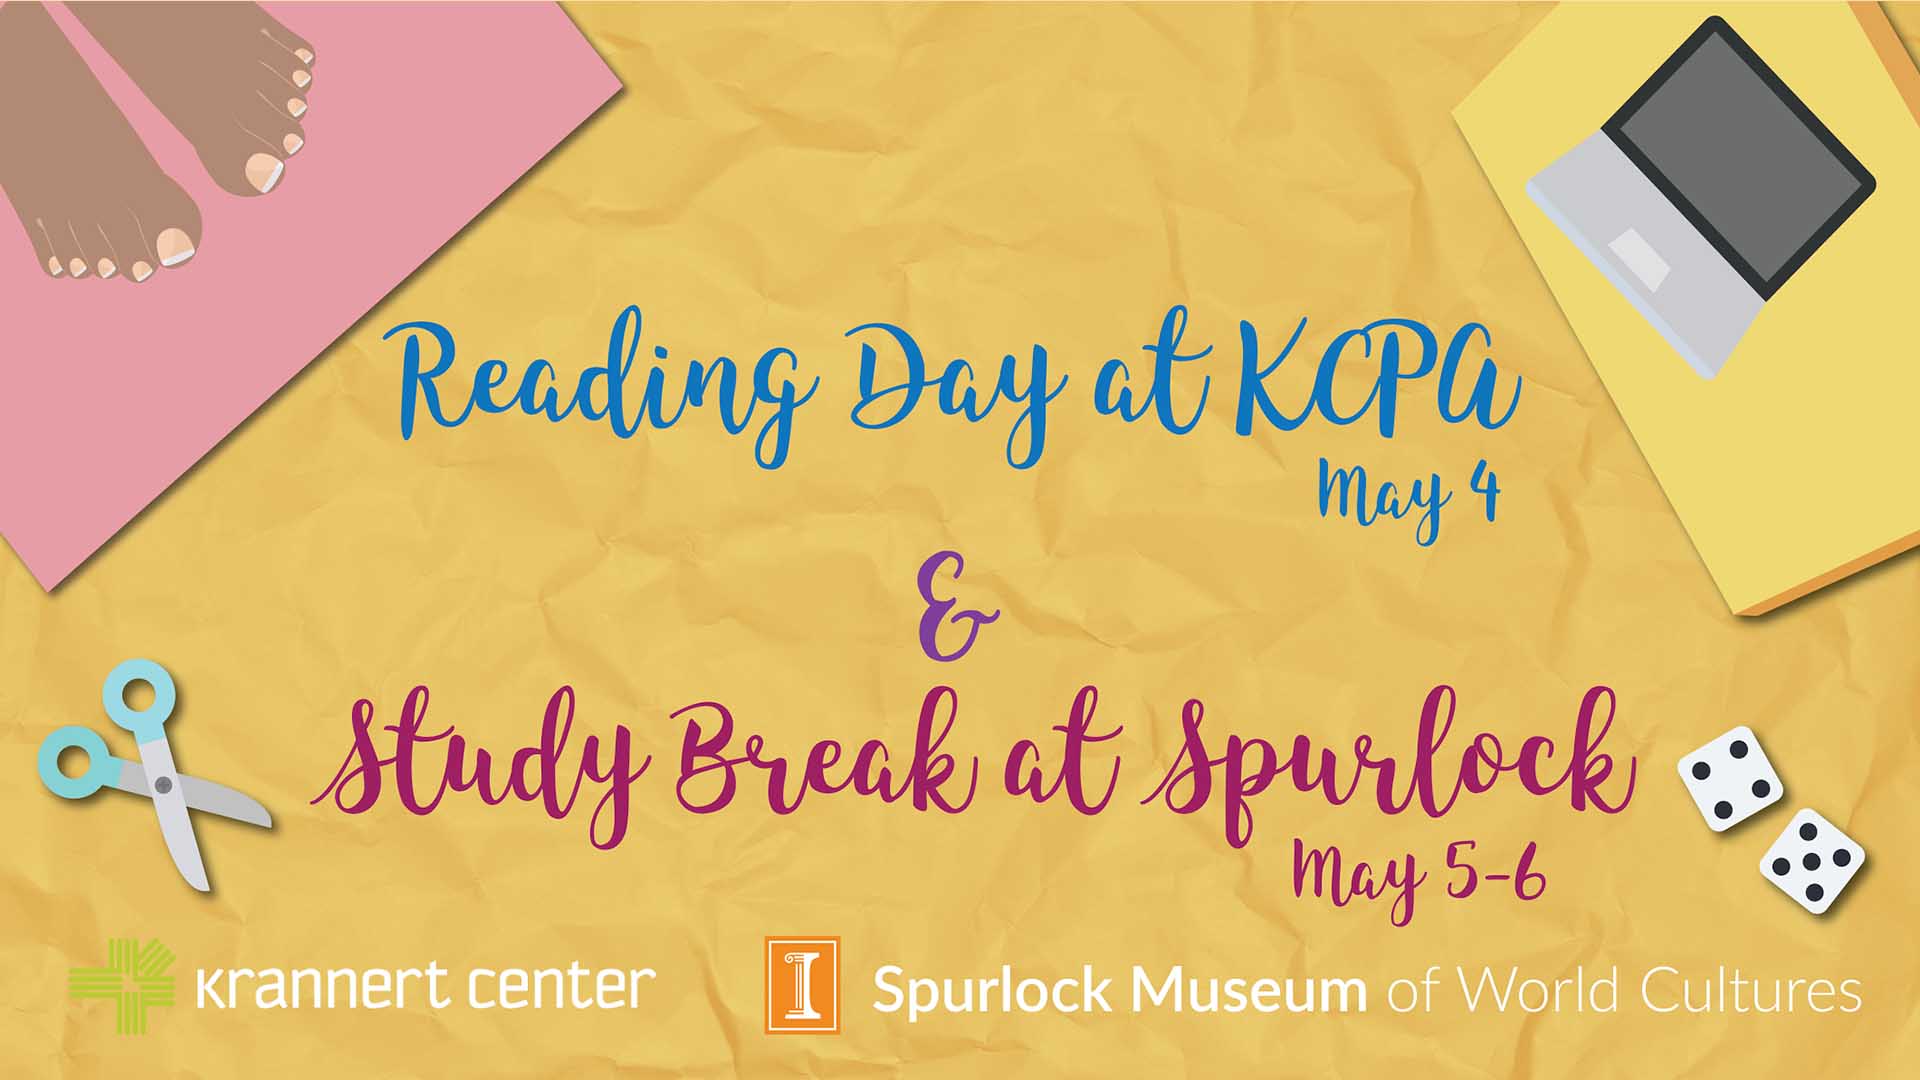 Reading Day at KCPA (May 4) and Study Break at Spurlock (May 5-6)